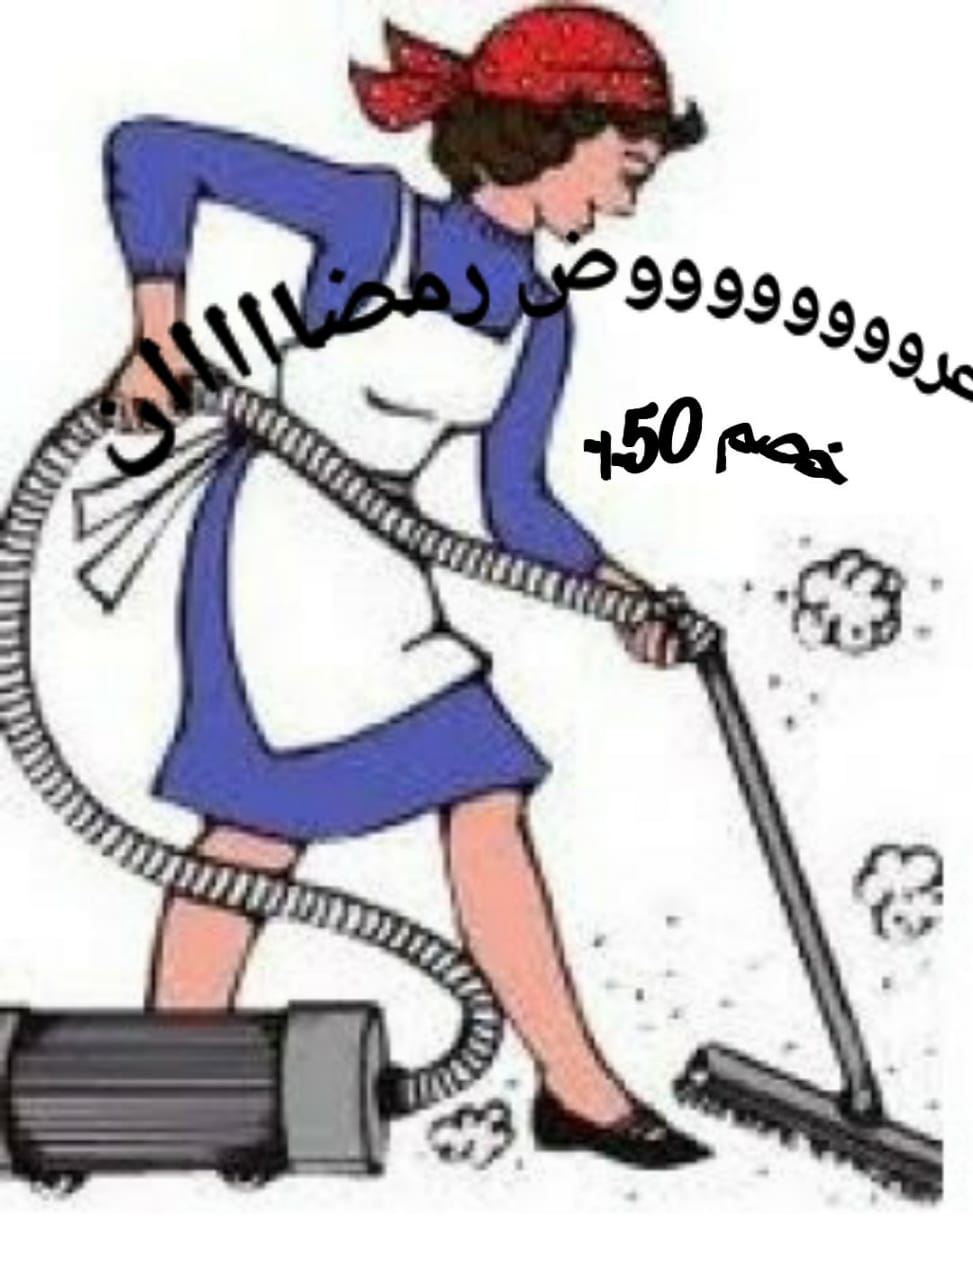 نوفر جميع انواع العمالة المنزلية مصريات وأجنبيات للنظافة المنزلية ورعاية الأطفال والمسنين